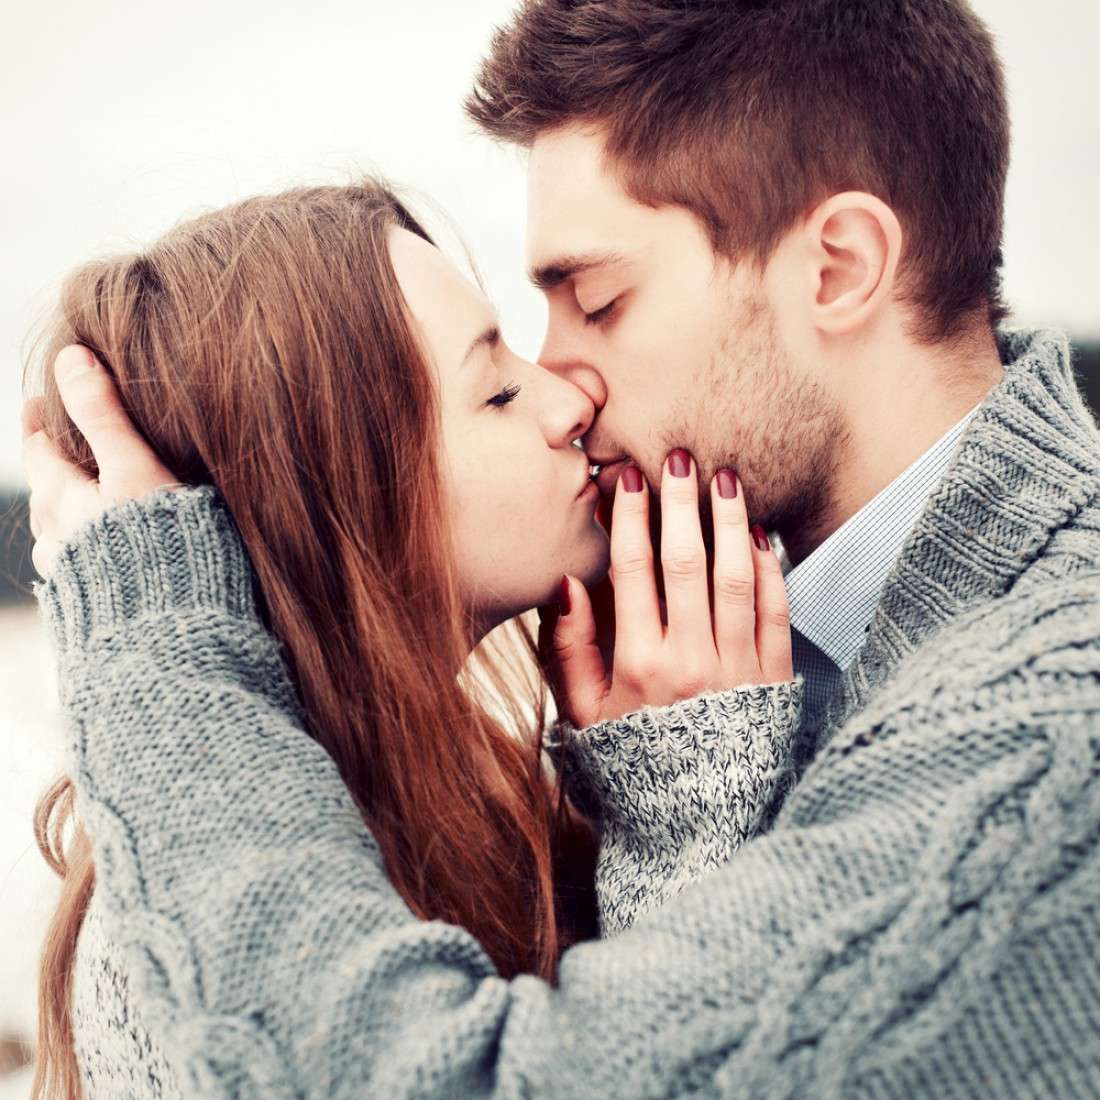 12 неожиданных фактов о поцелуях, которые интересно знать - фото 325408